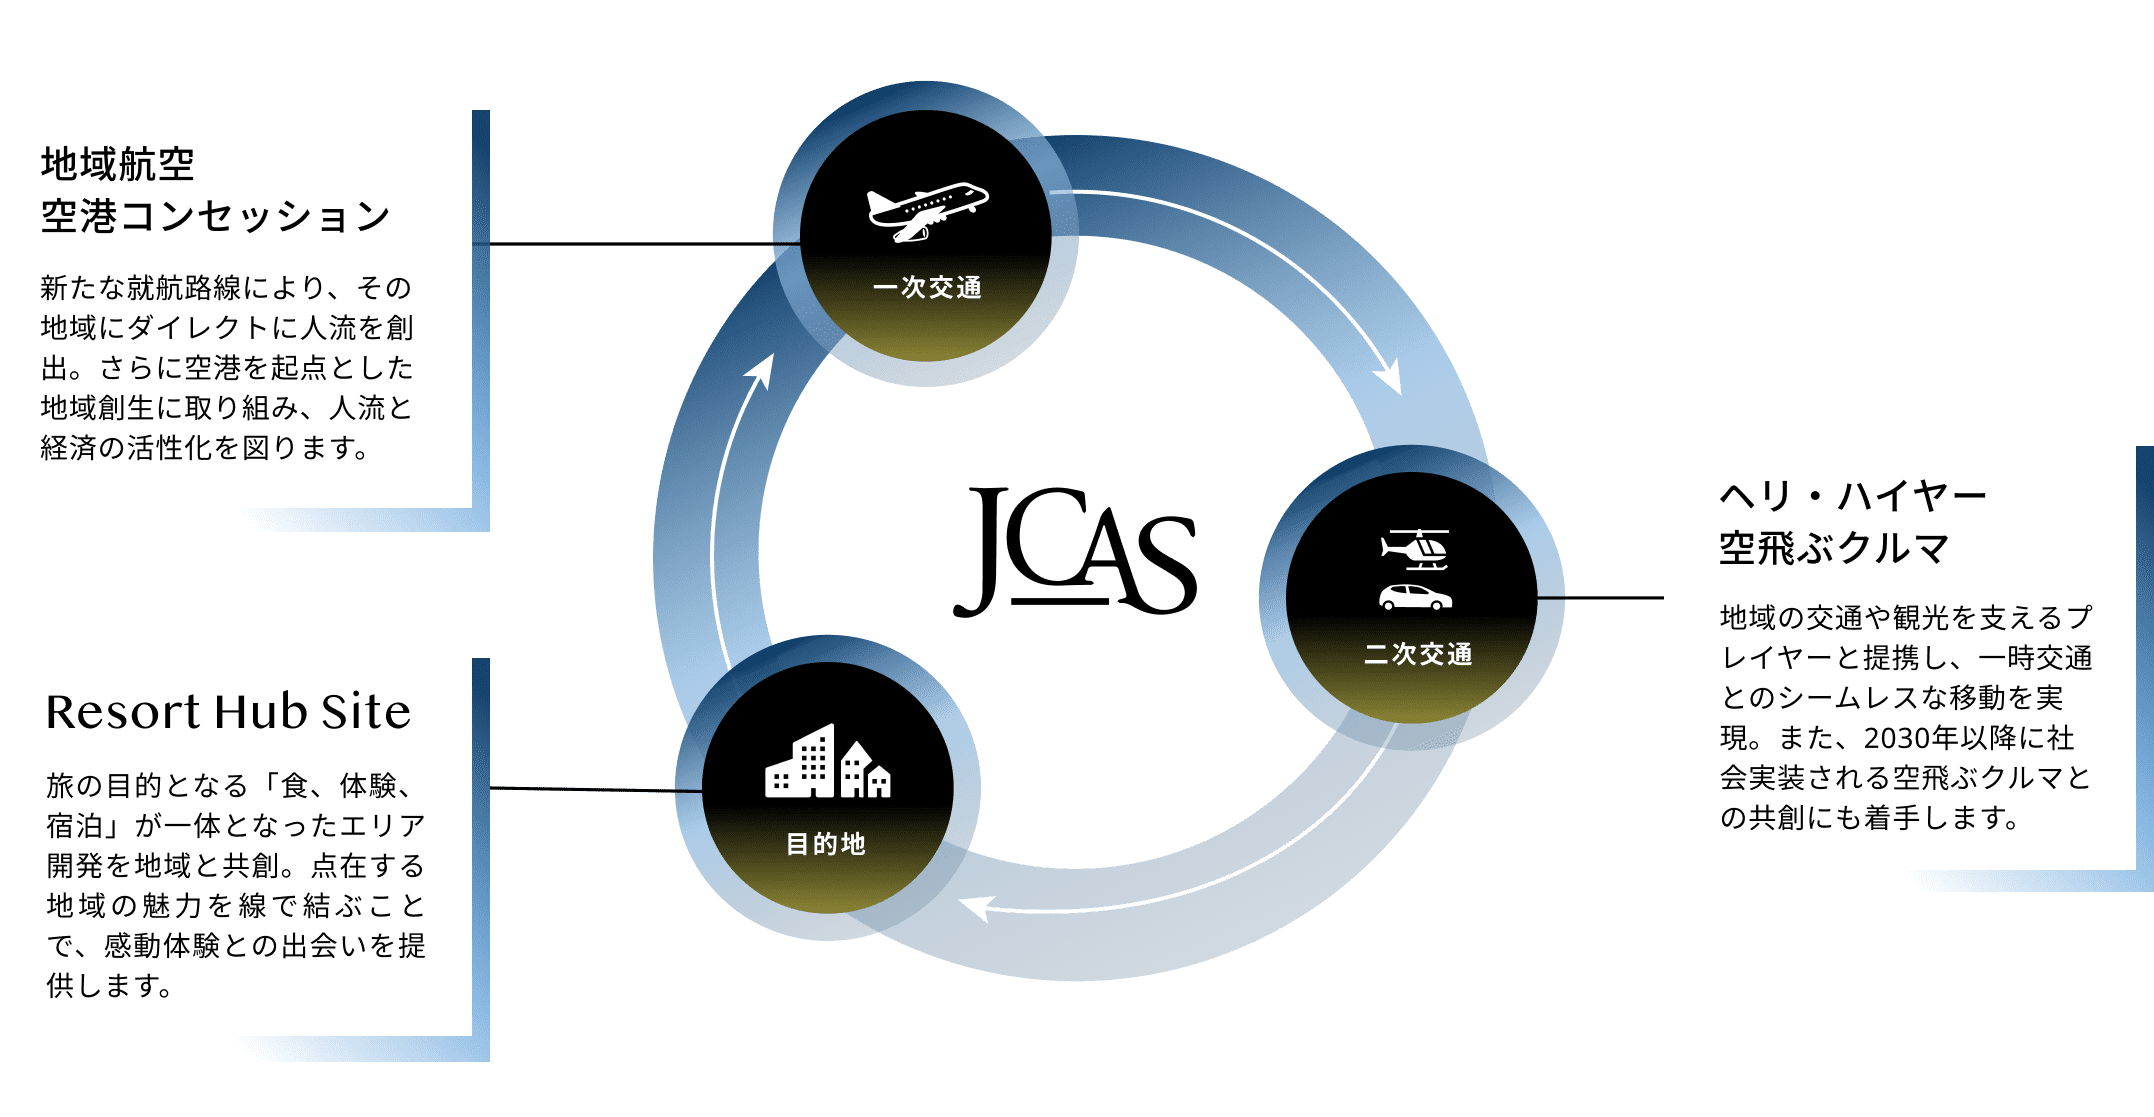 JCAS Airways